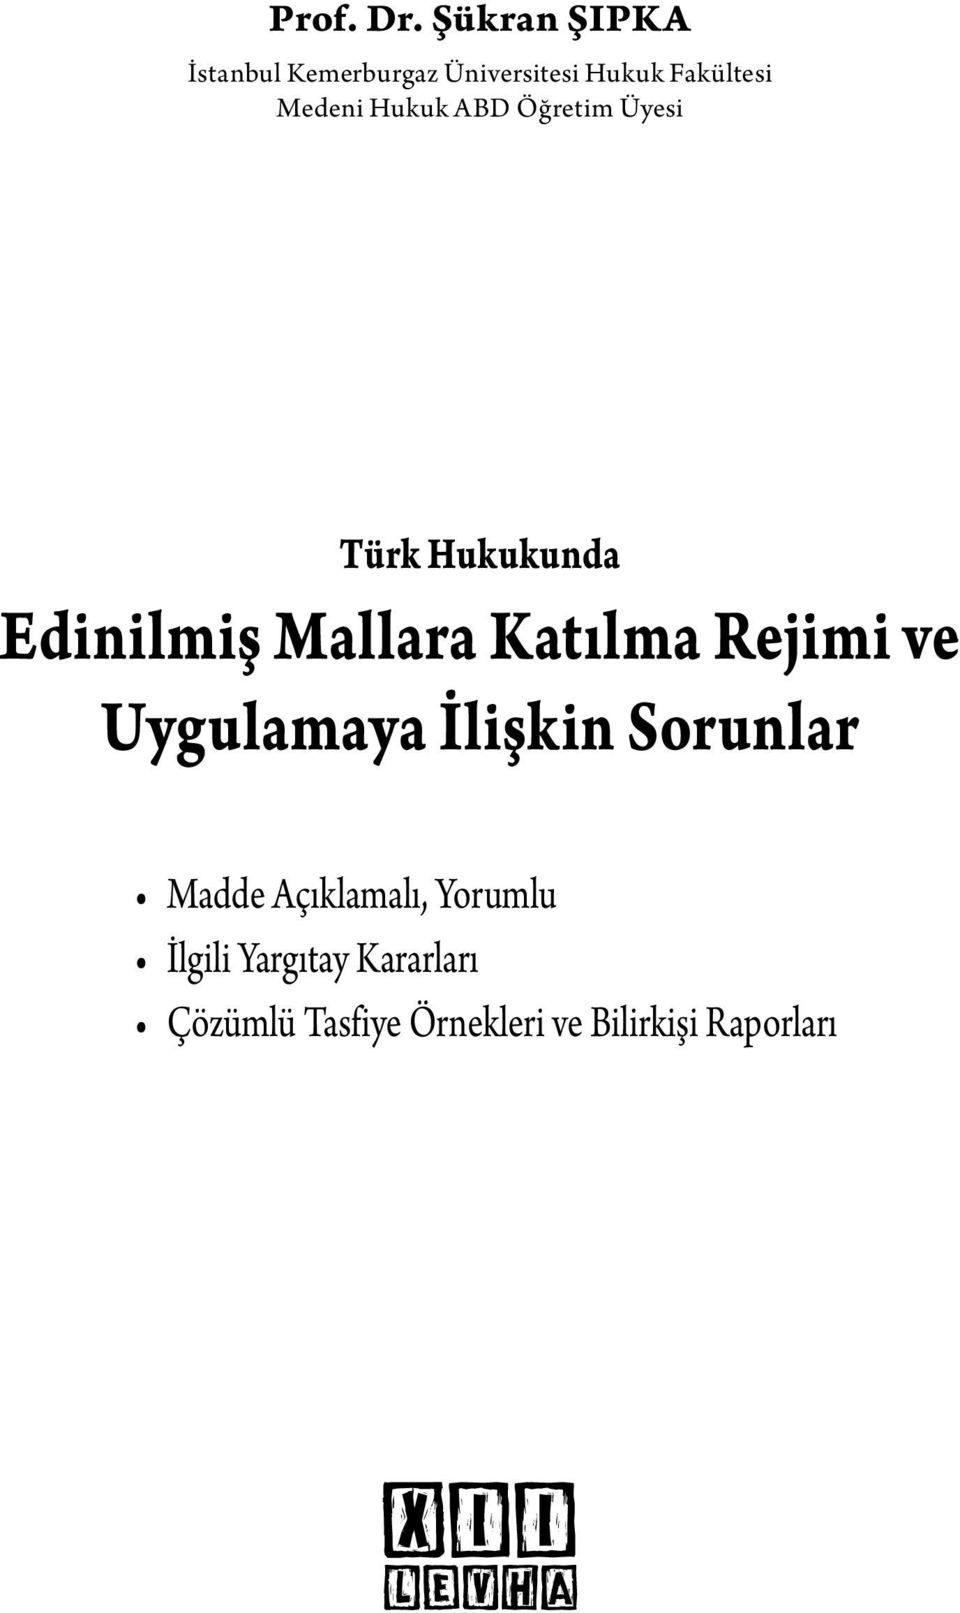 Hukuk ABD Öğretim Üyesi Türk Hukukunda Edinilmiş Mallara Katılma